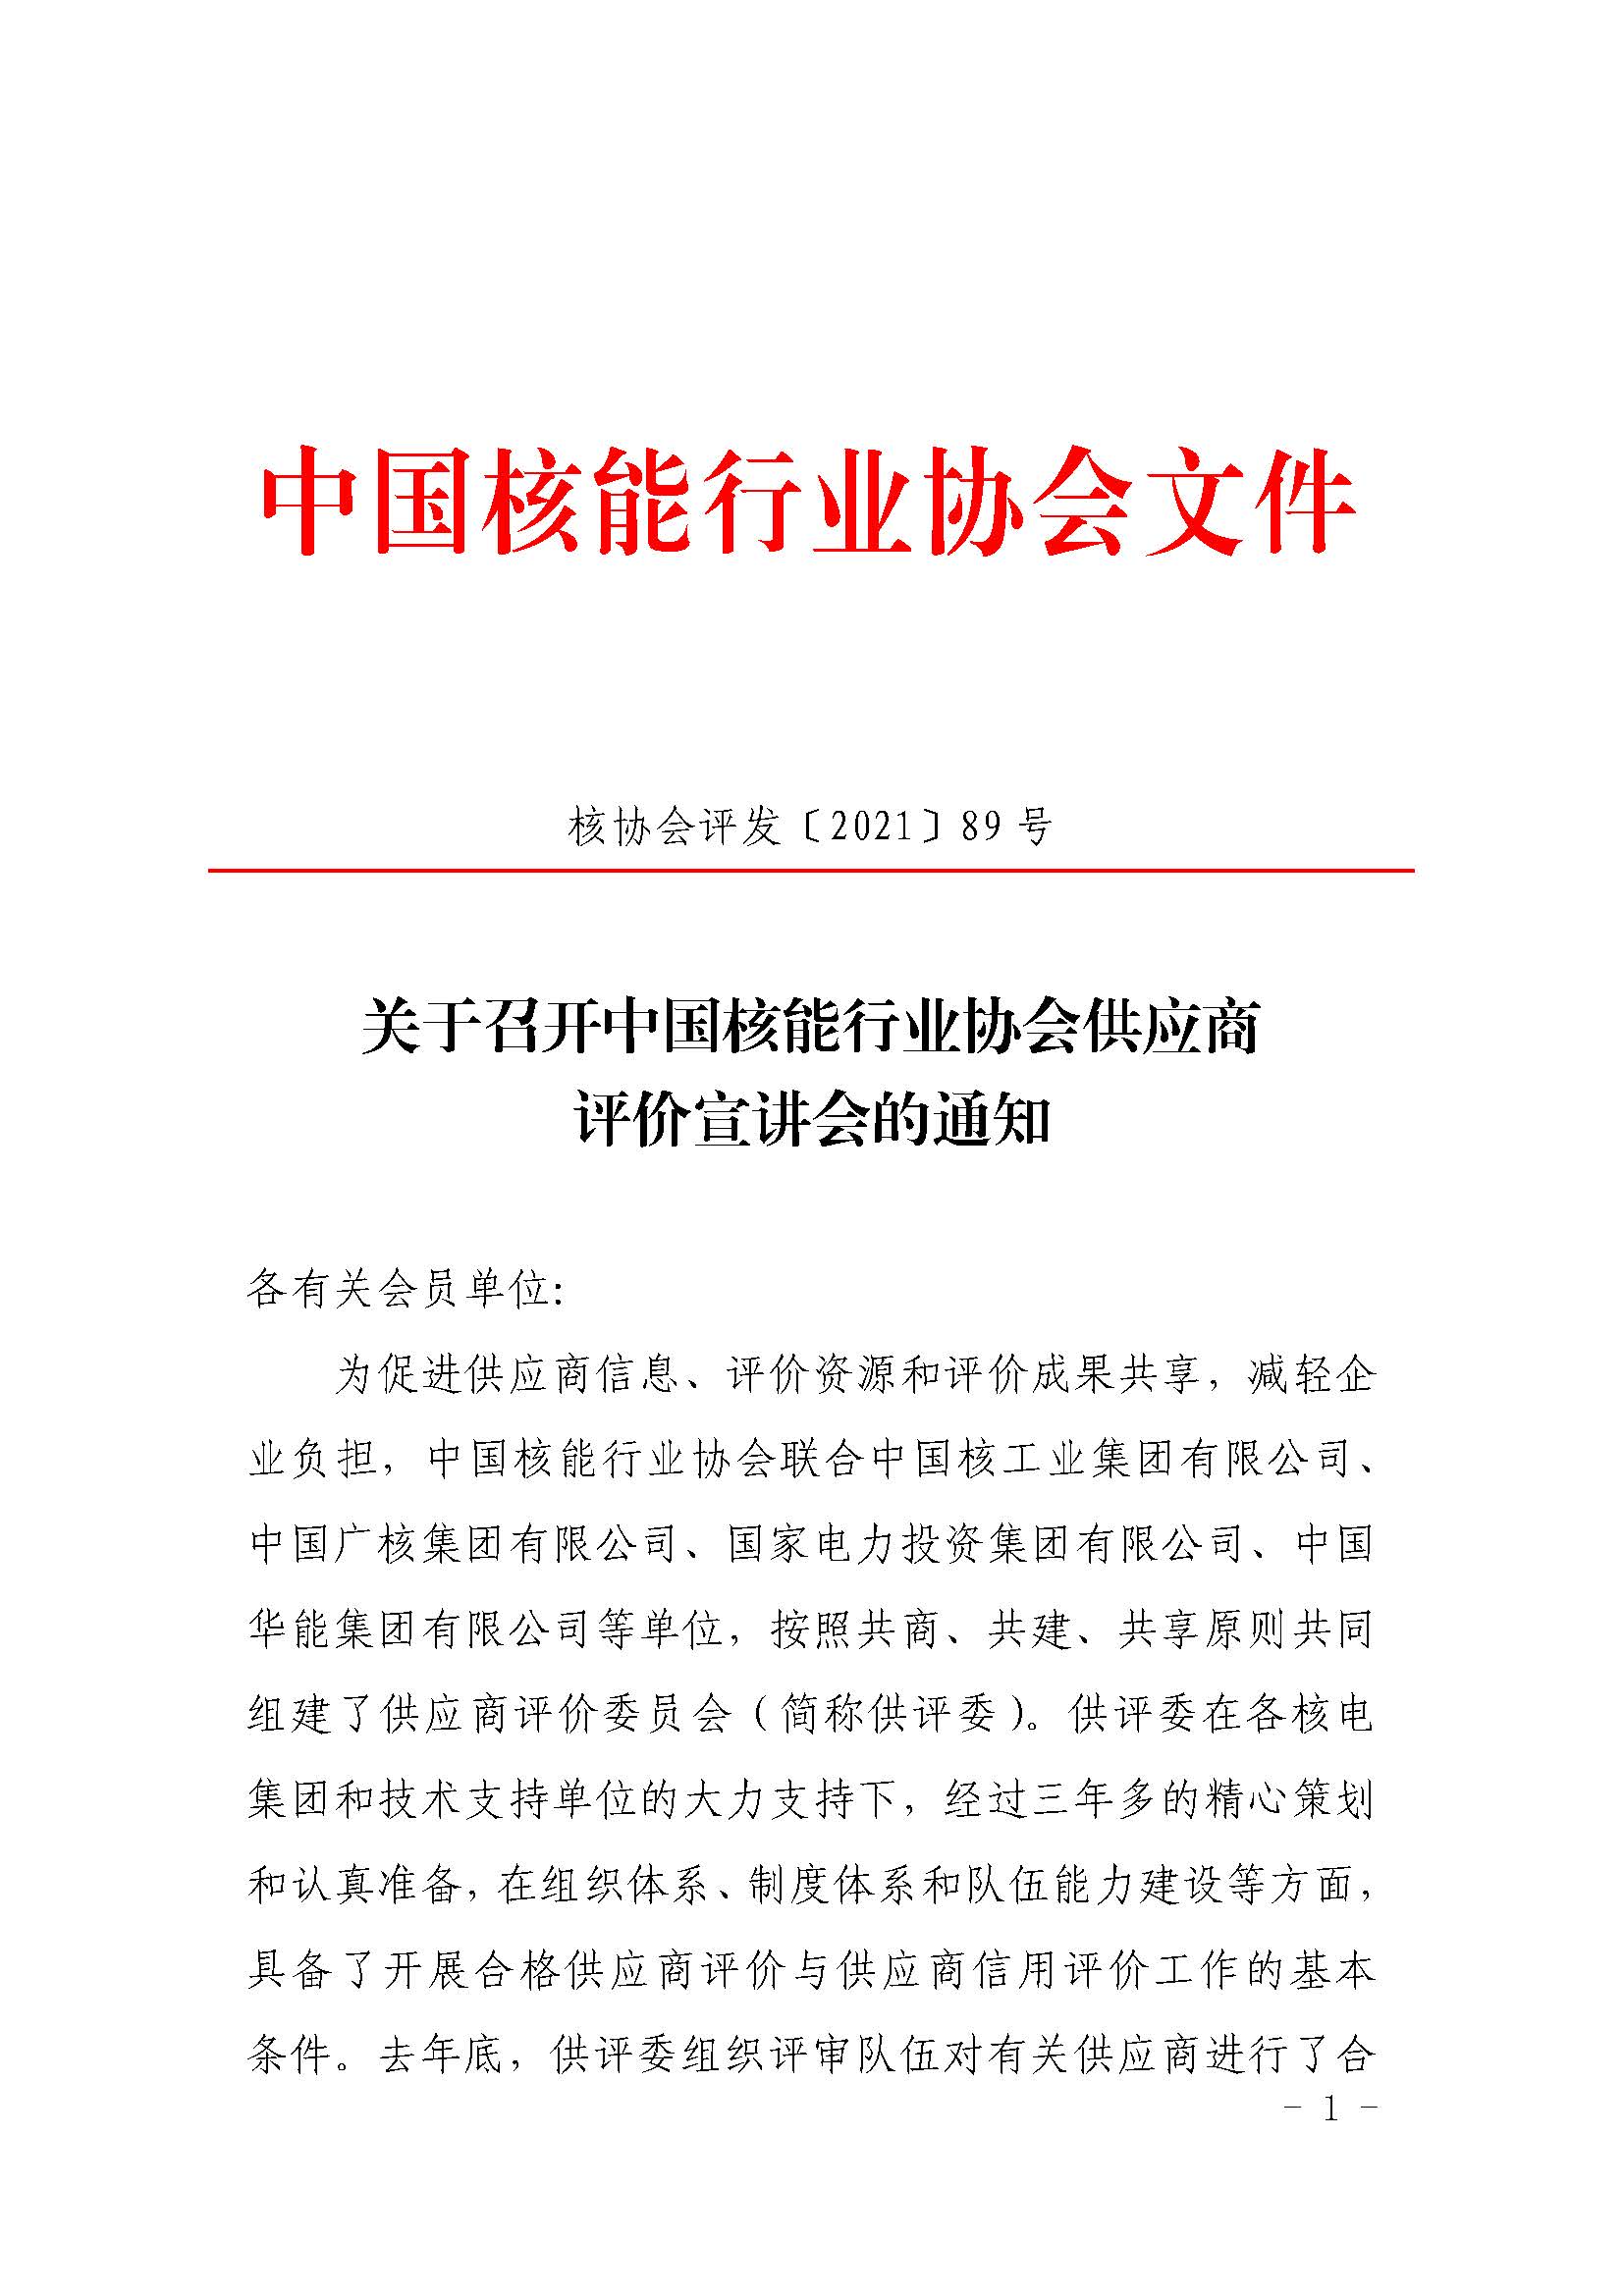 关于召开中国核能行业协会供应商评价宣讲会的通知3.4_页面_1.jpg